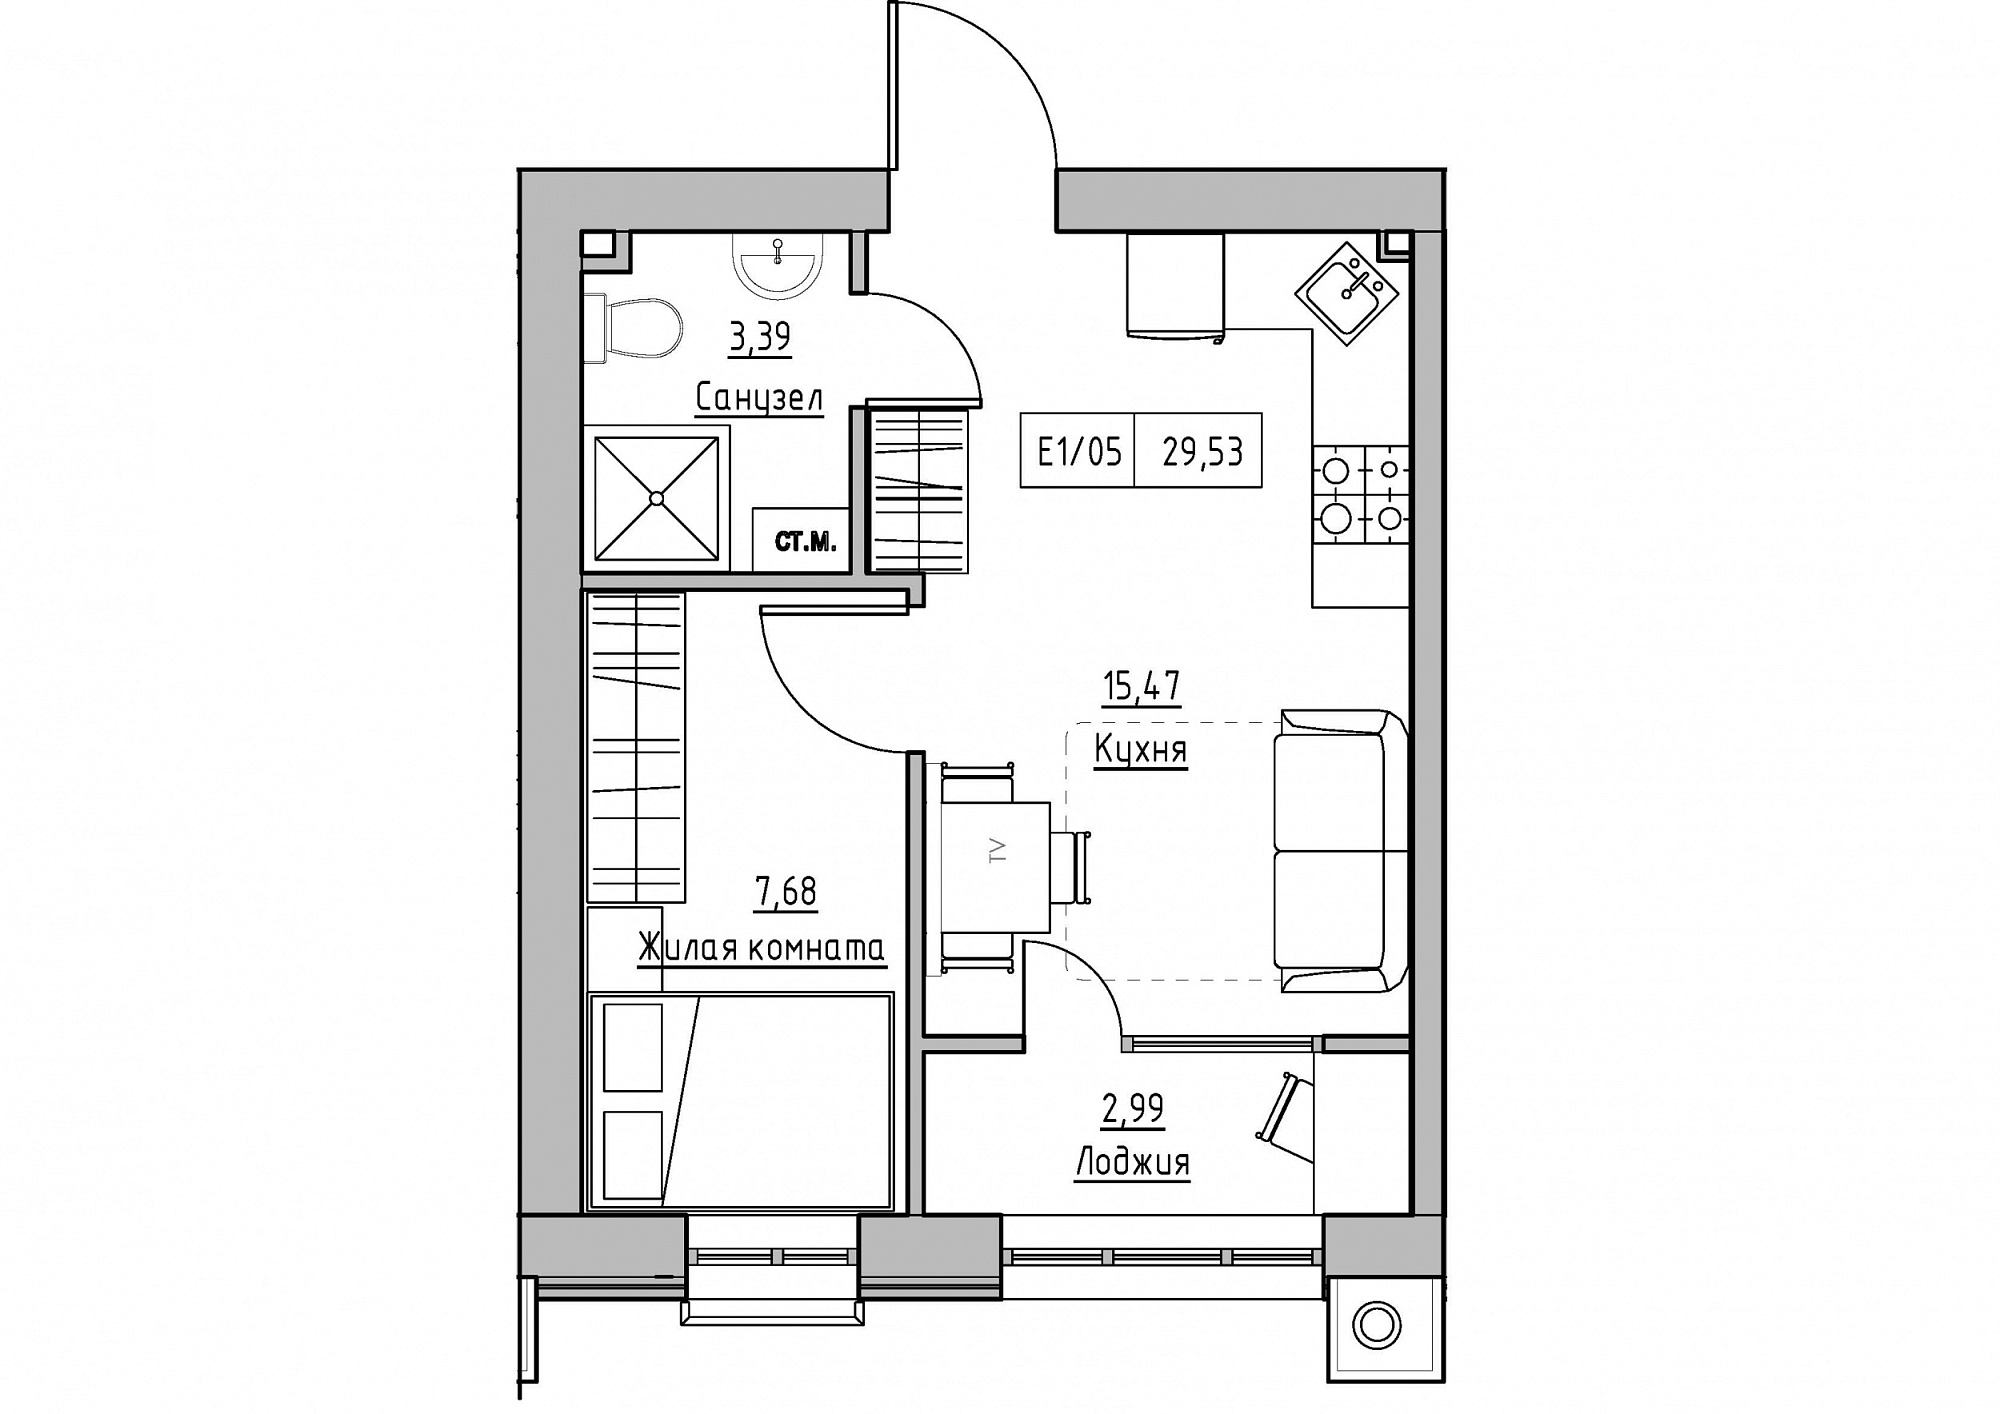 Планування 1-к квартира площею 29.53м2, KS-011-03/0010.